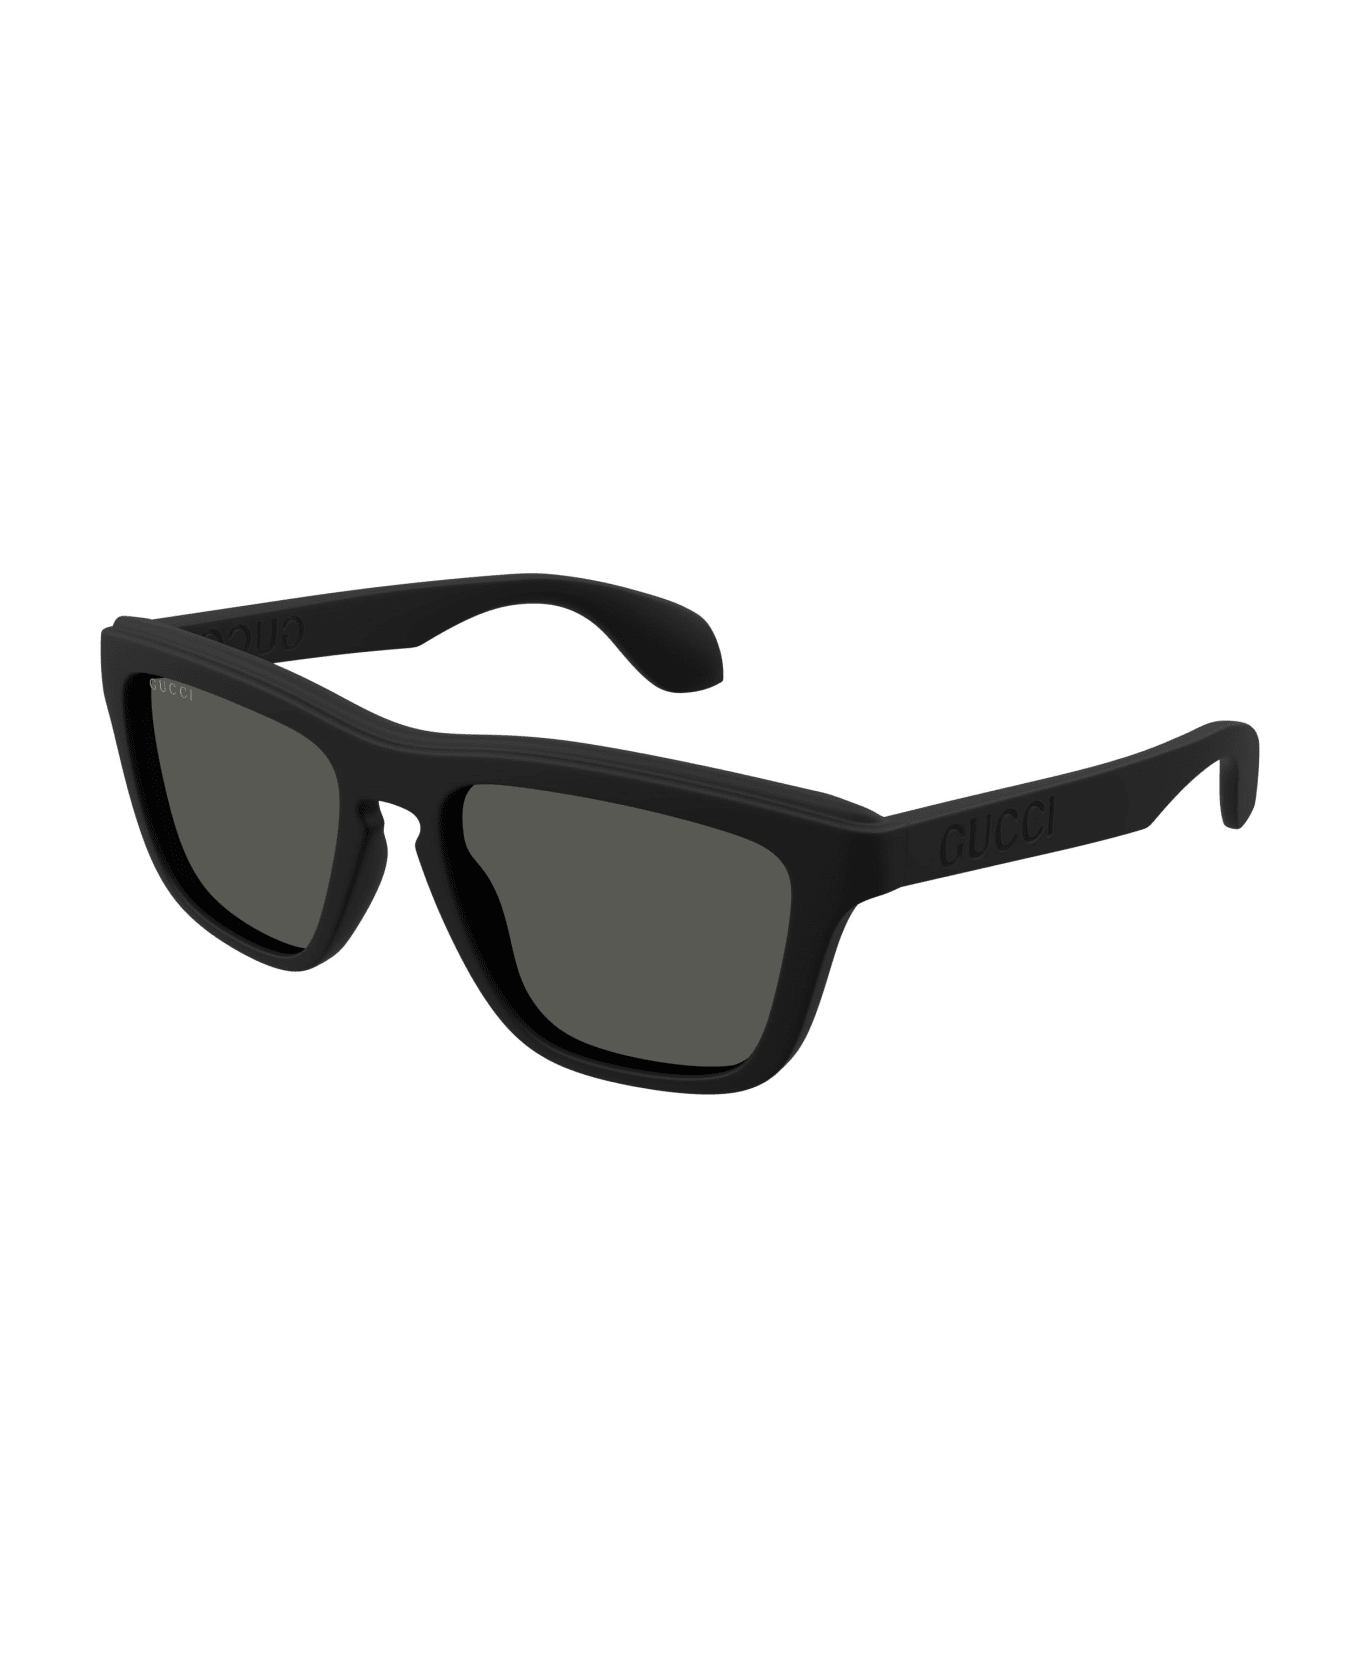 Gucci Eyewear Sunglasses - Nero/Grigio サングラス